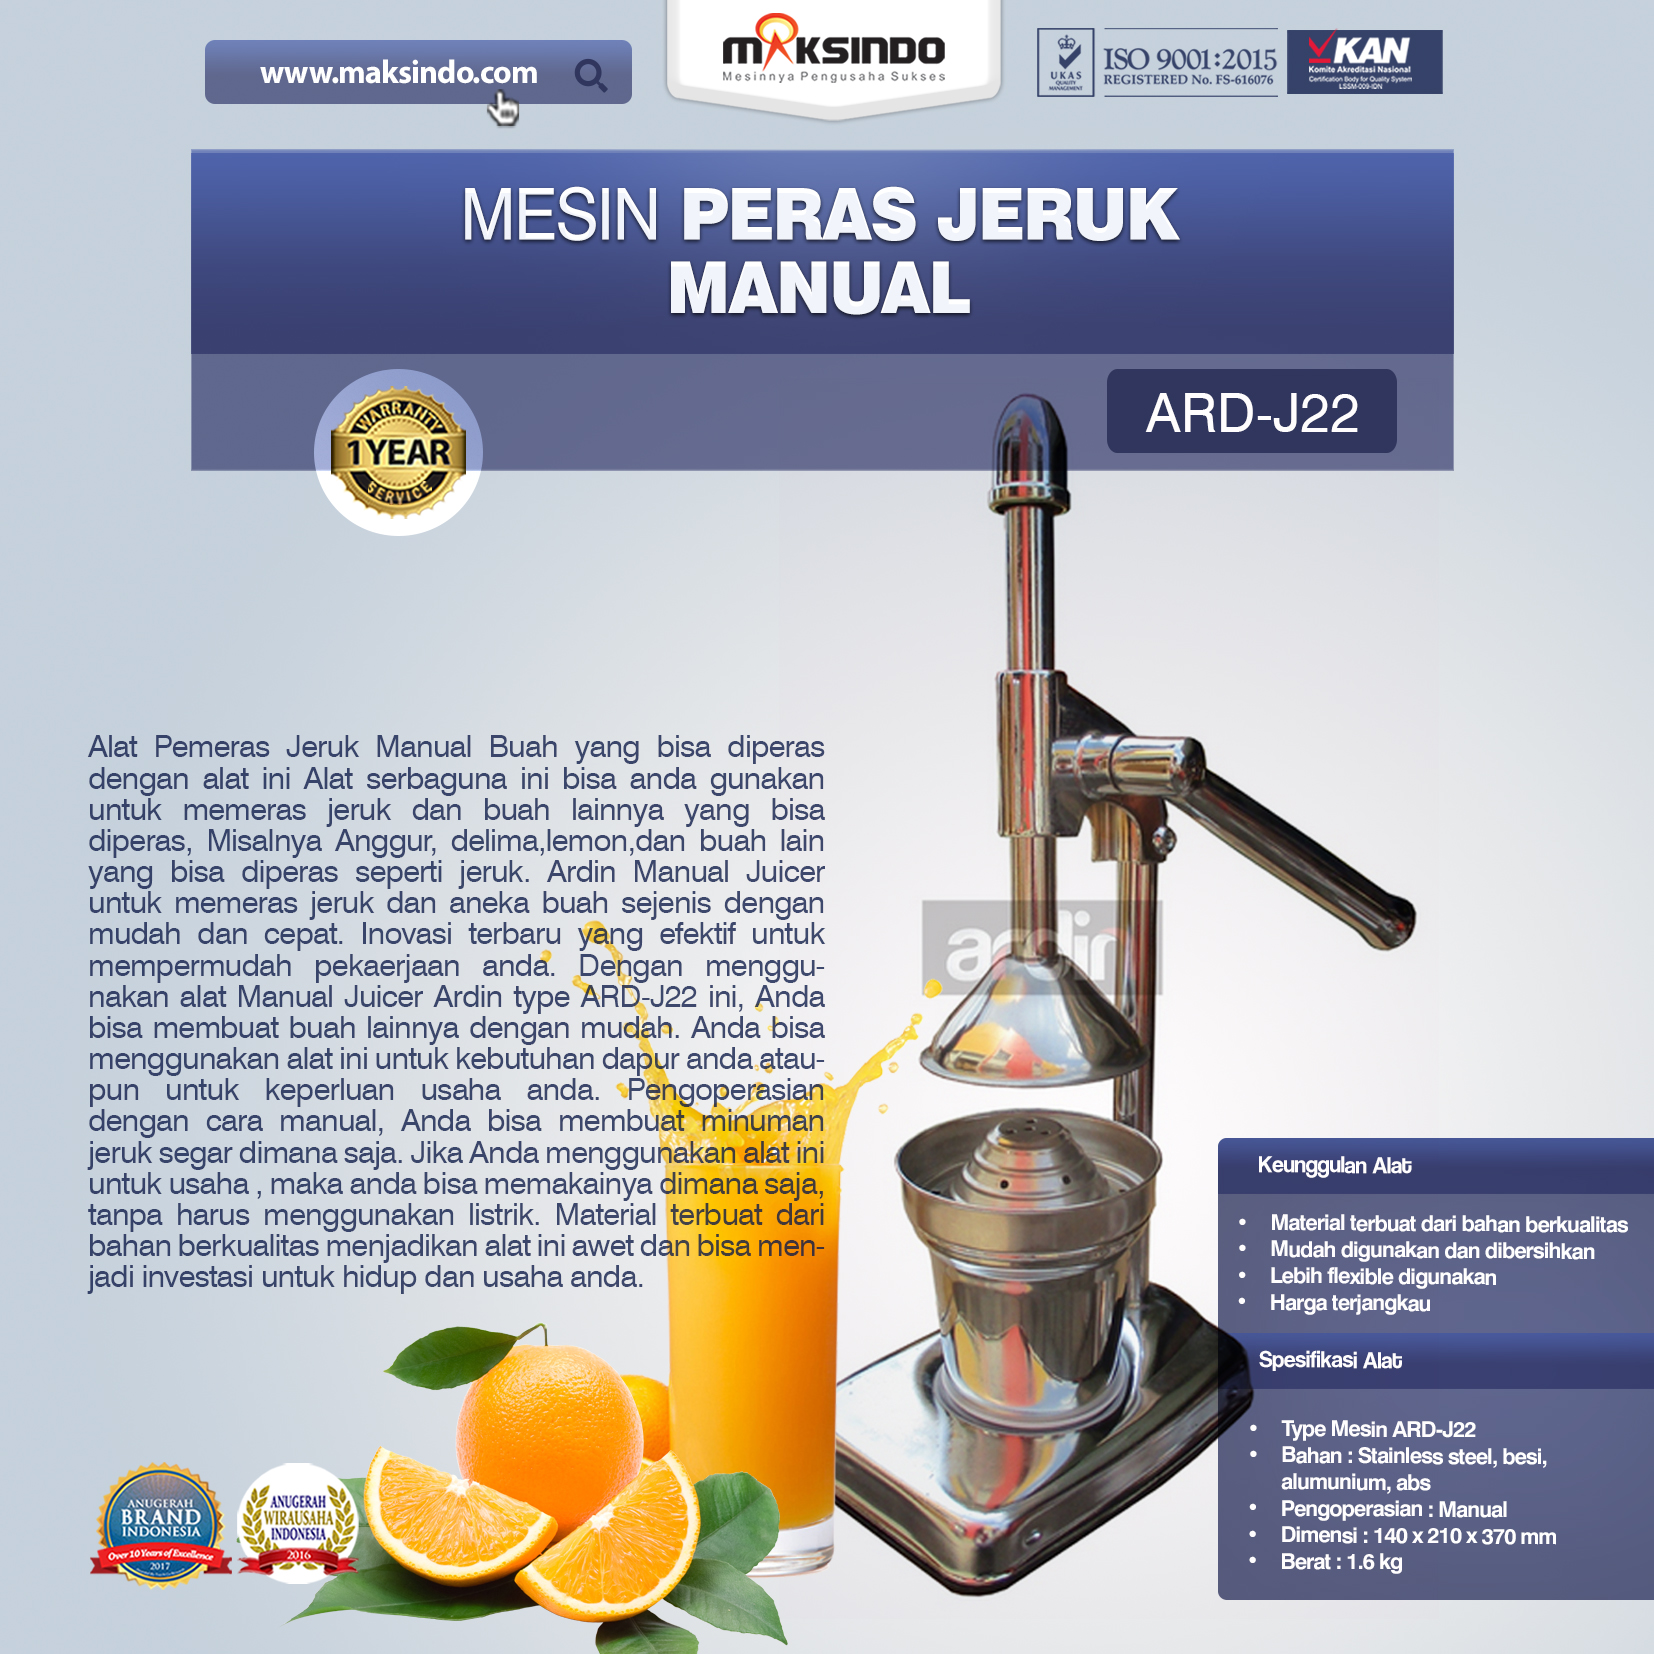 Jual Alat Pemeras Jeruk Manual ARD-J22 di Malang